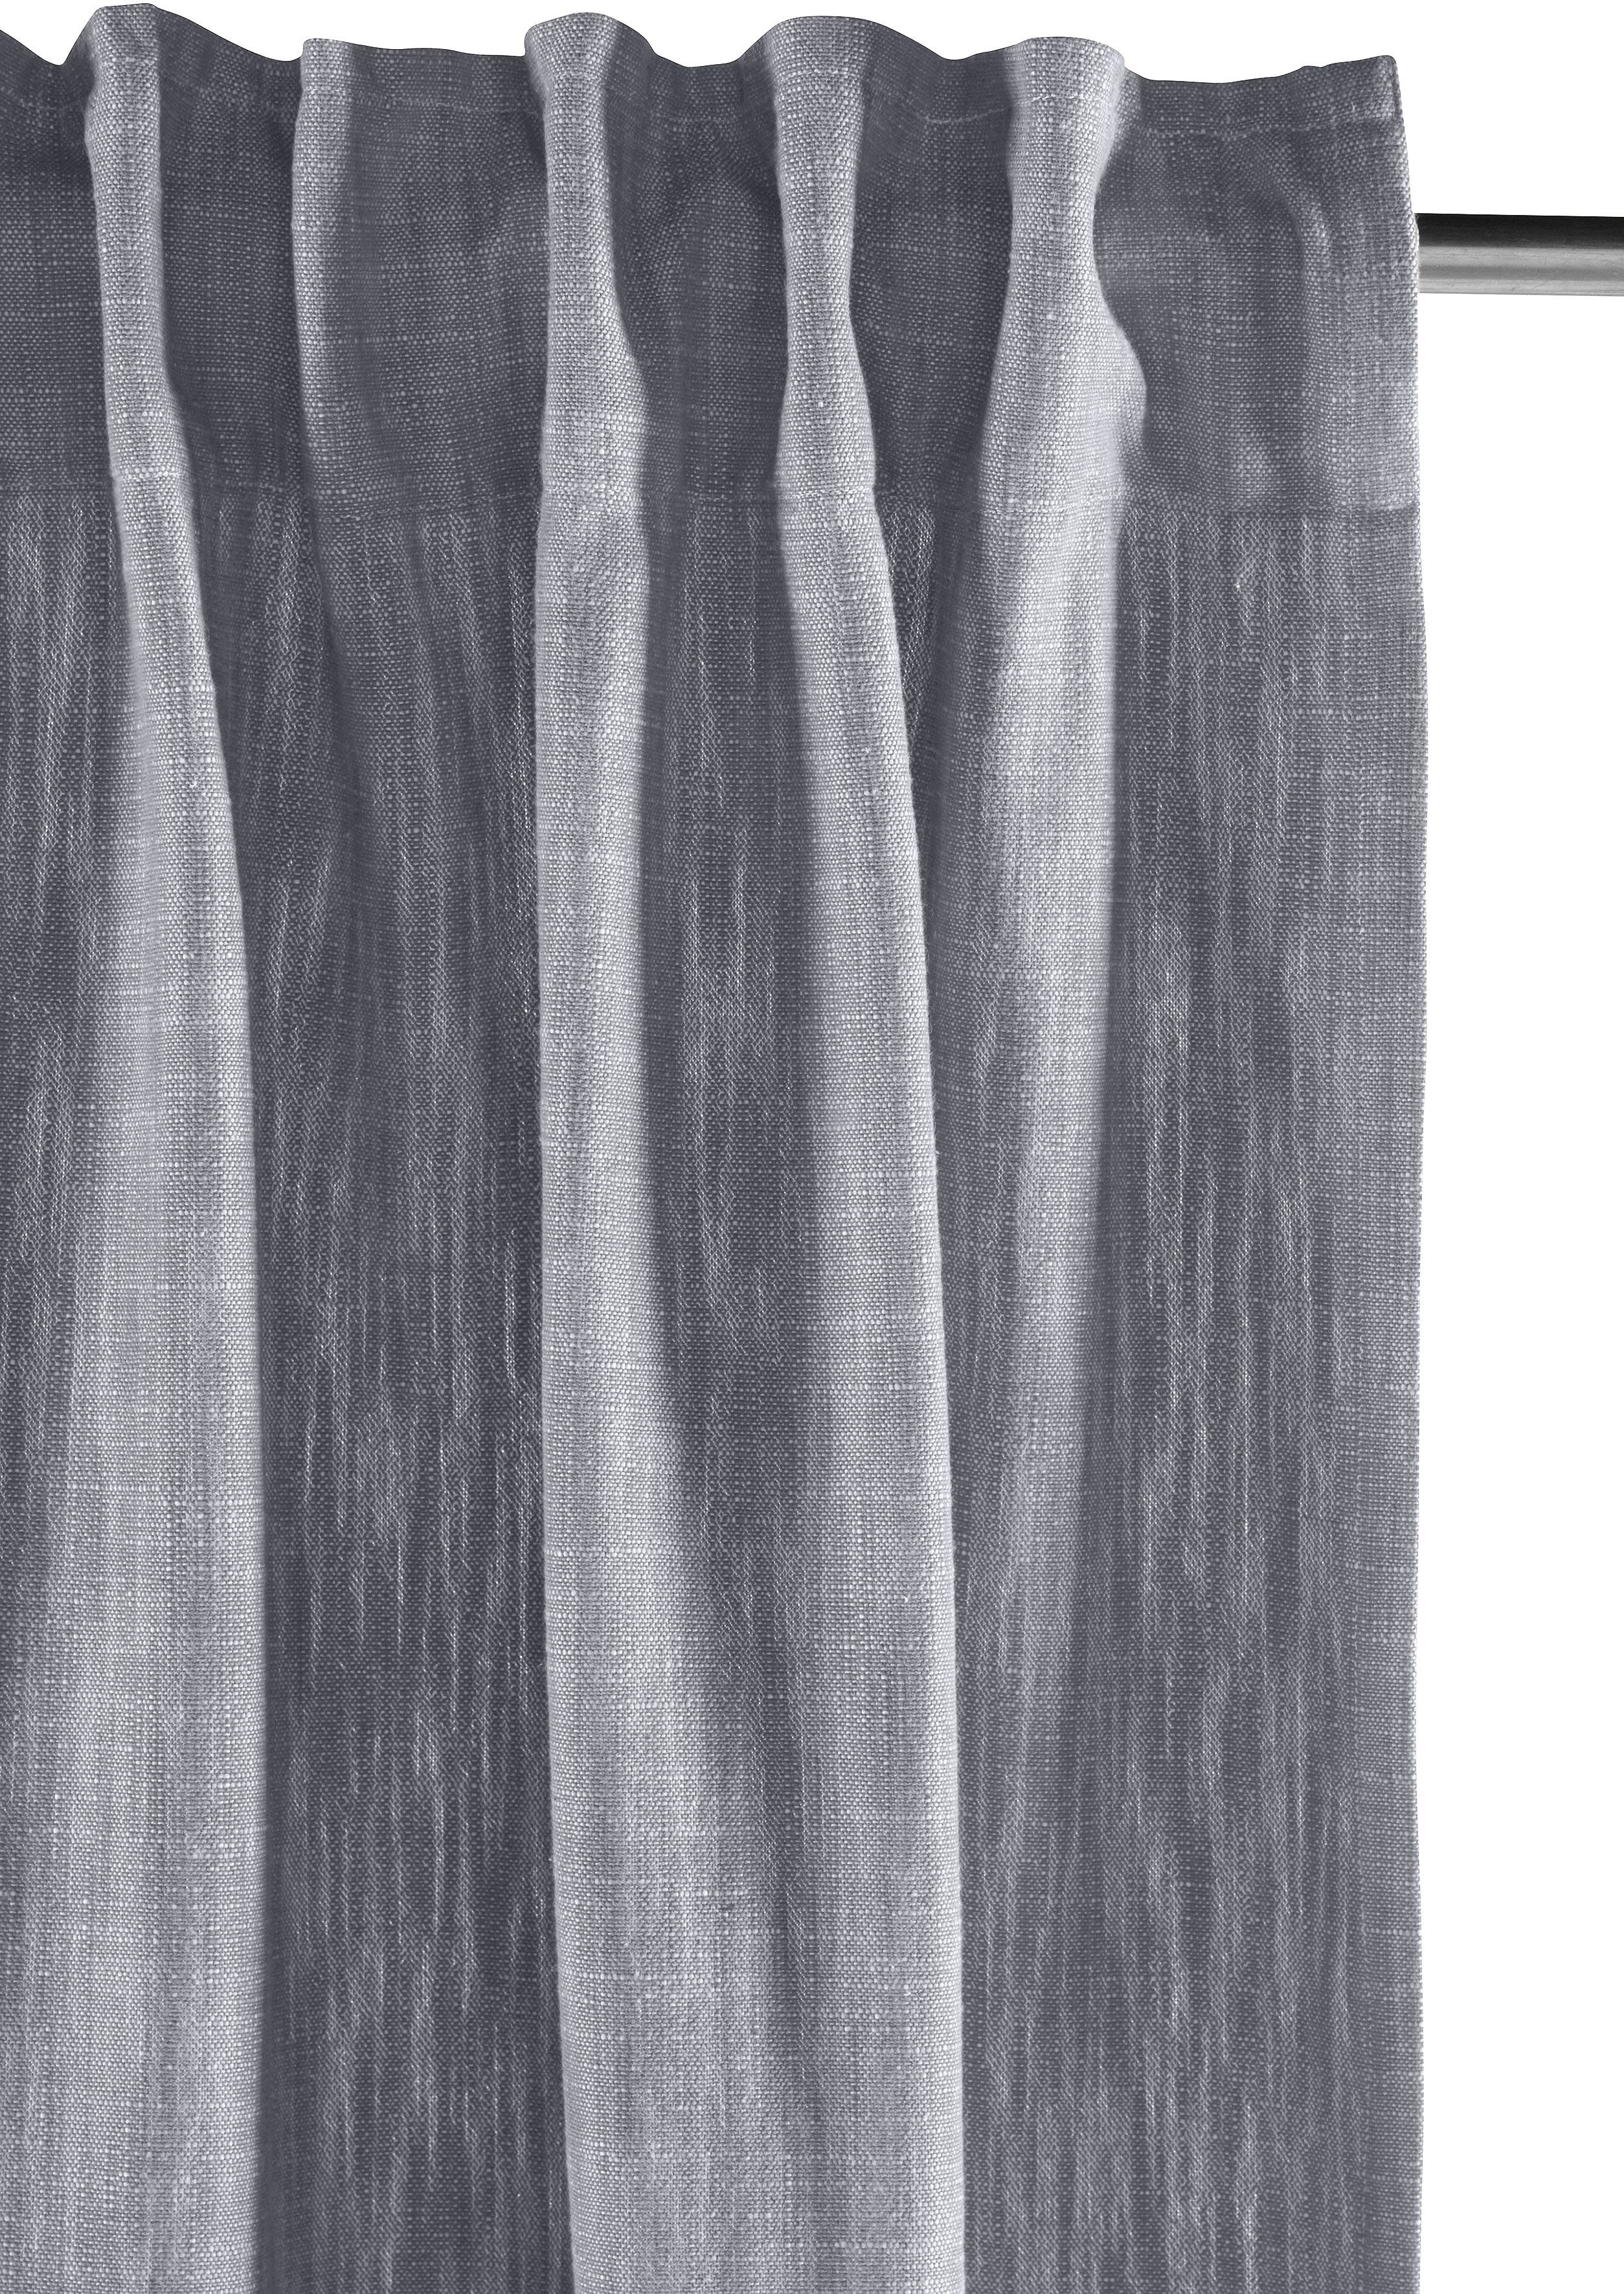 Elbgarn, elbgestoeber, grau St), blickdicht Vorhang (1 Multifunktionsband